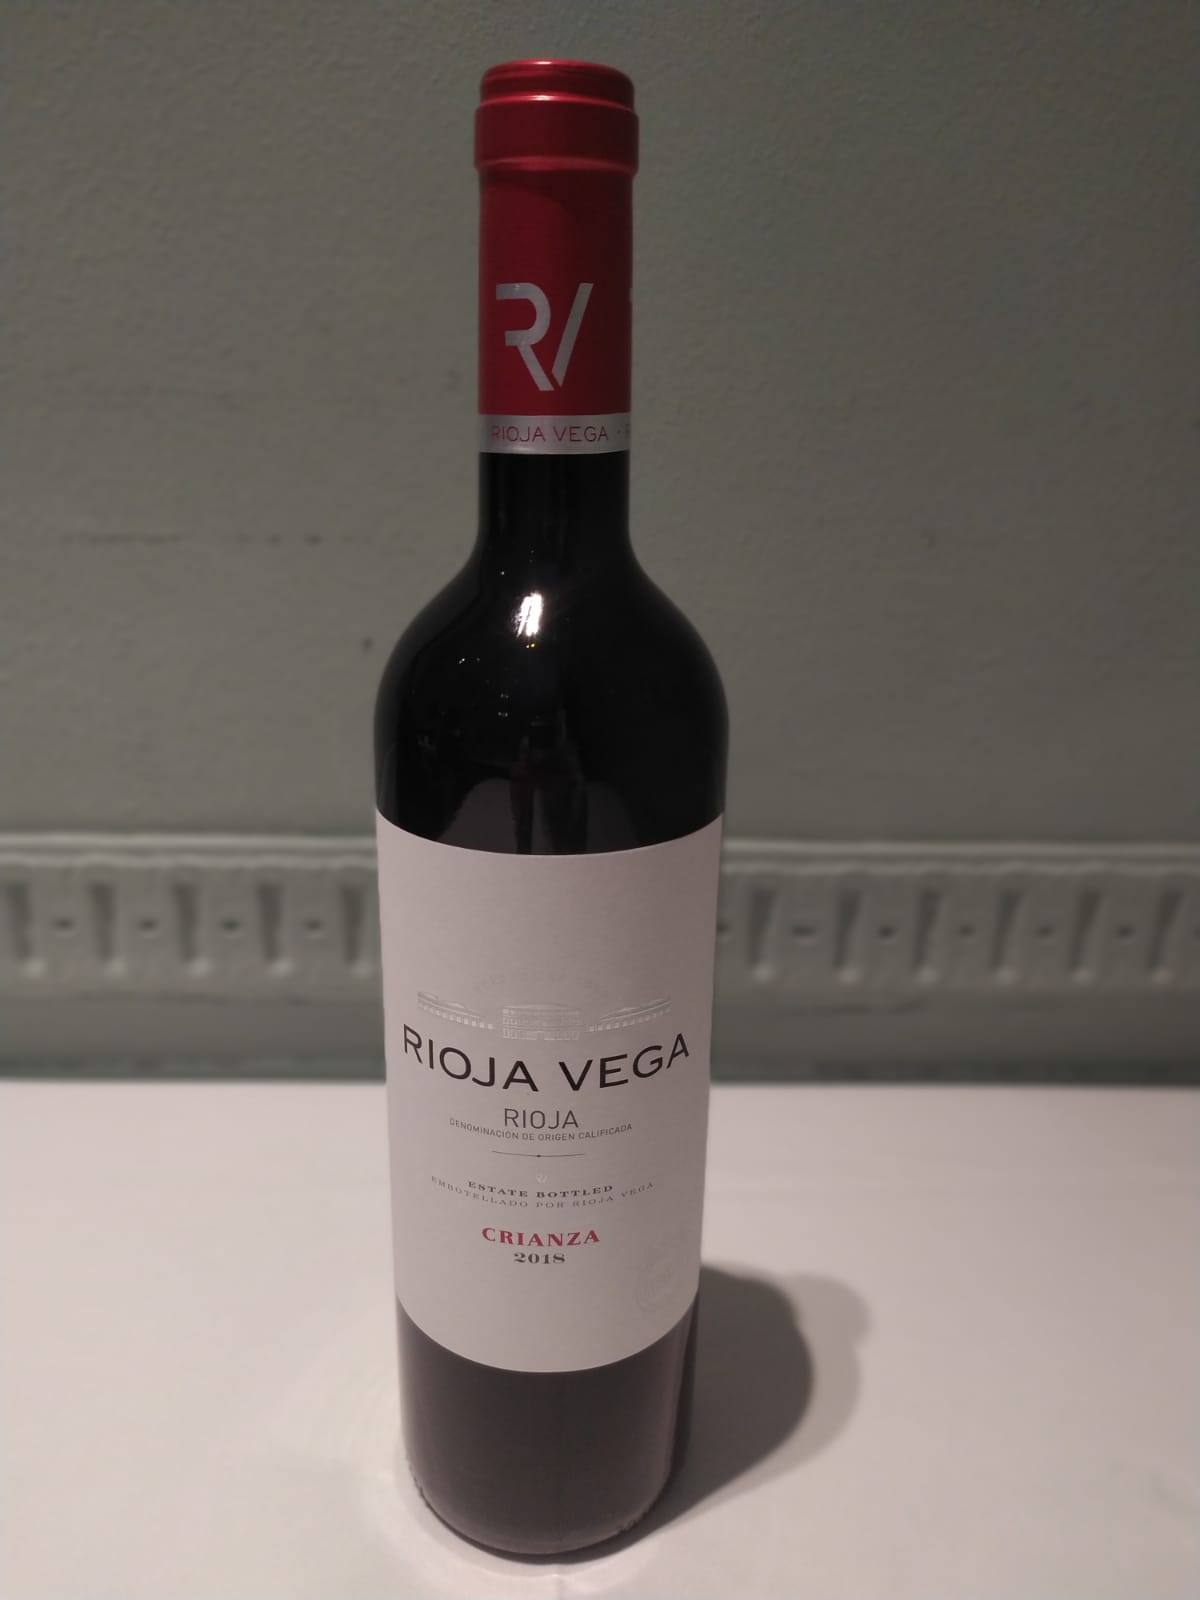 Rioja Vega (Empfehlung des Hauses)